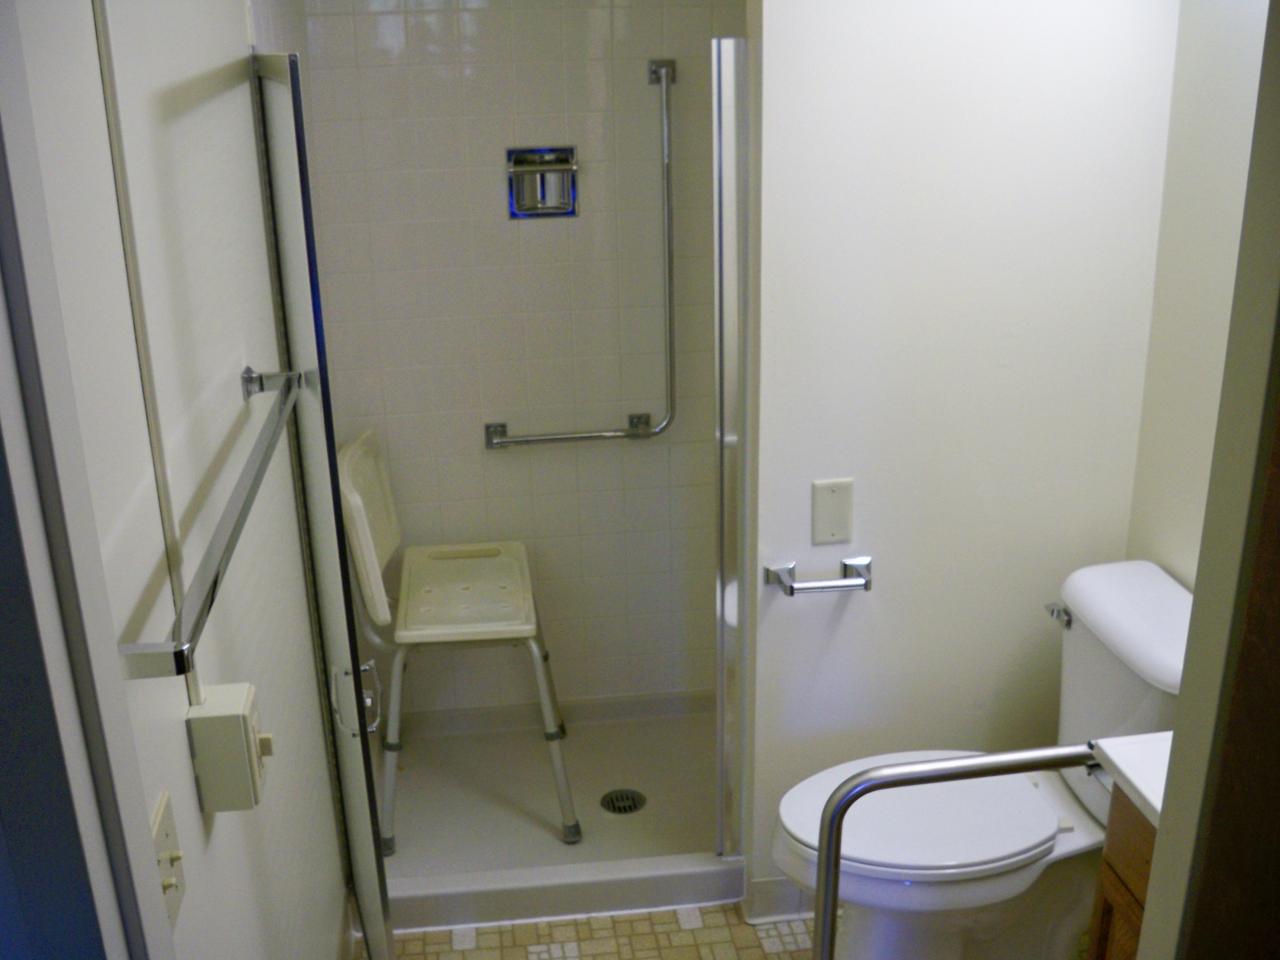 retro-bathroom-design-shower-door-open-large